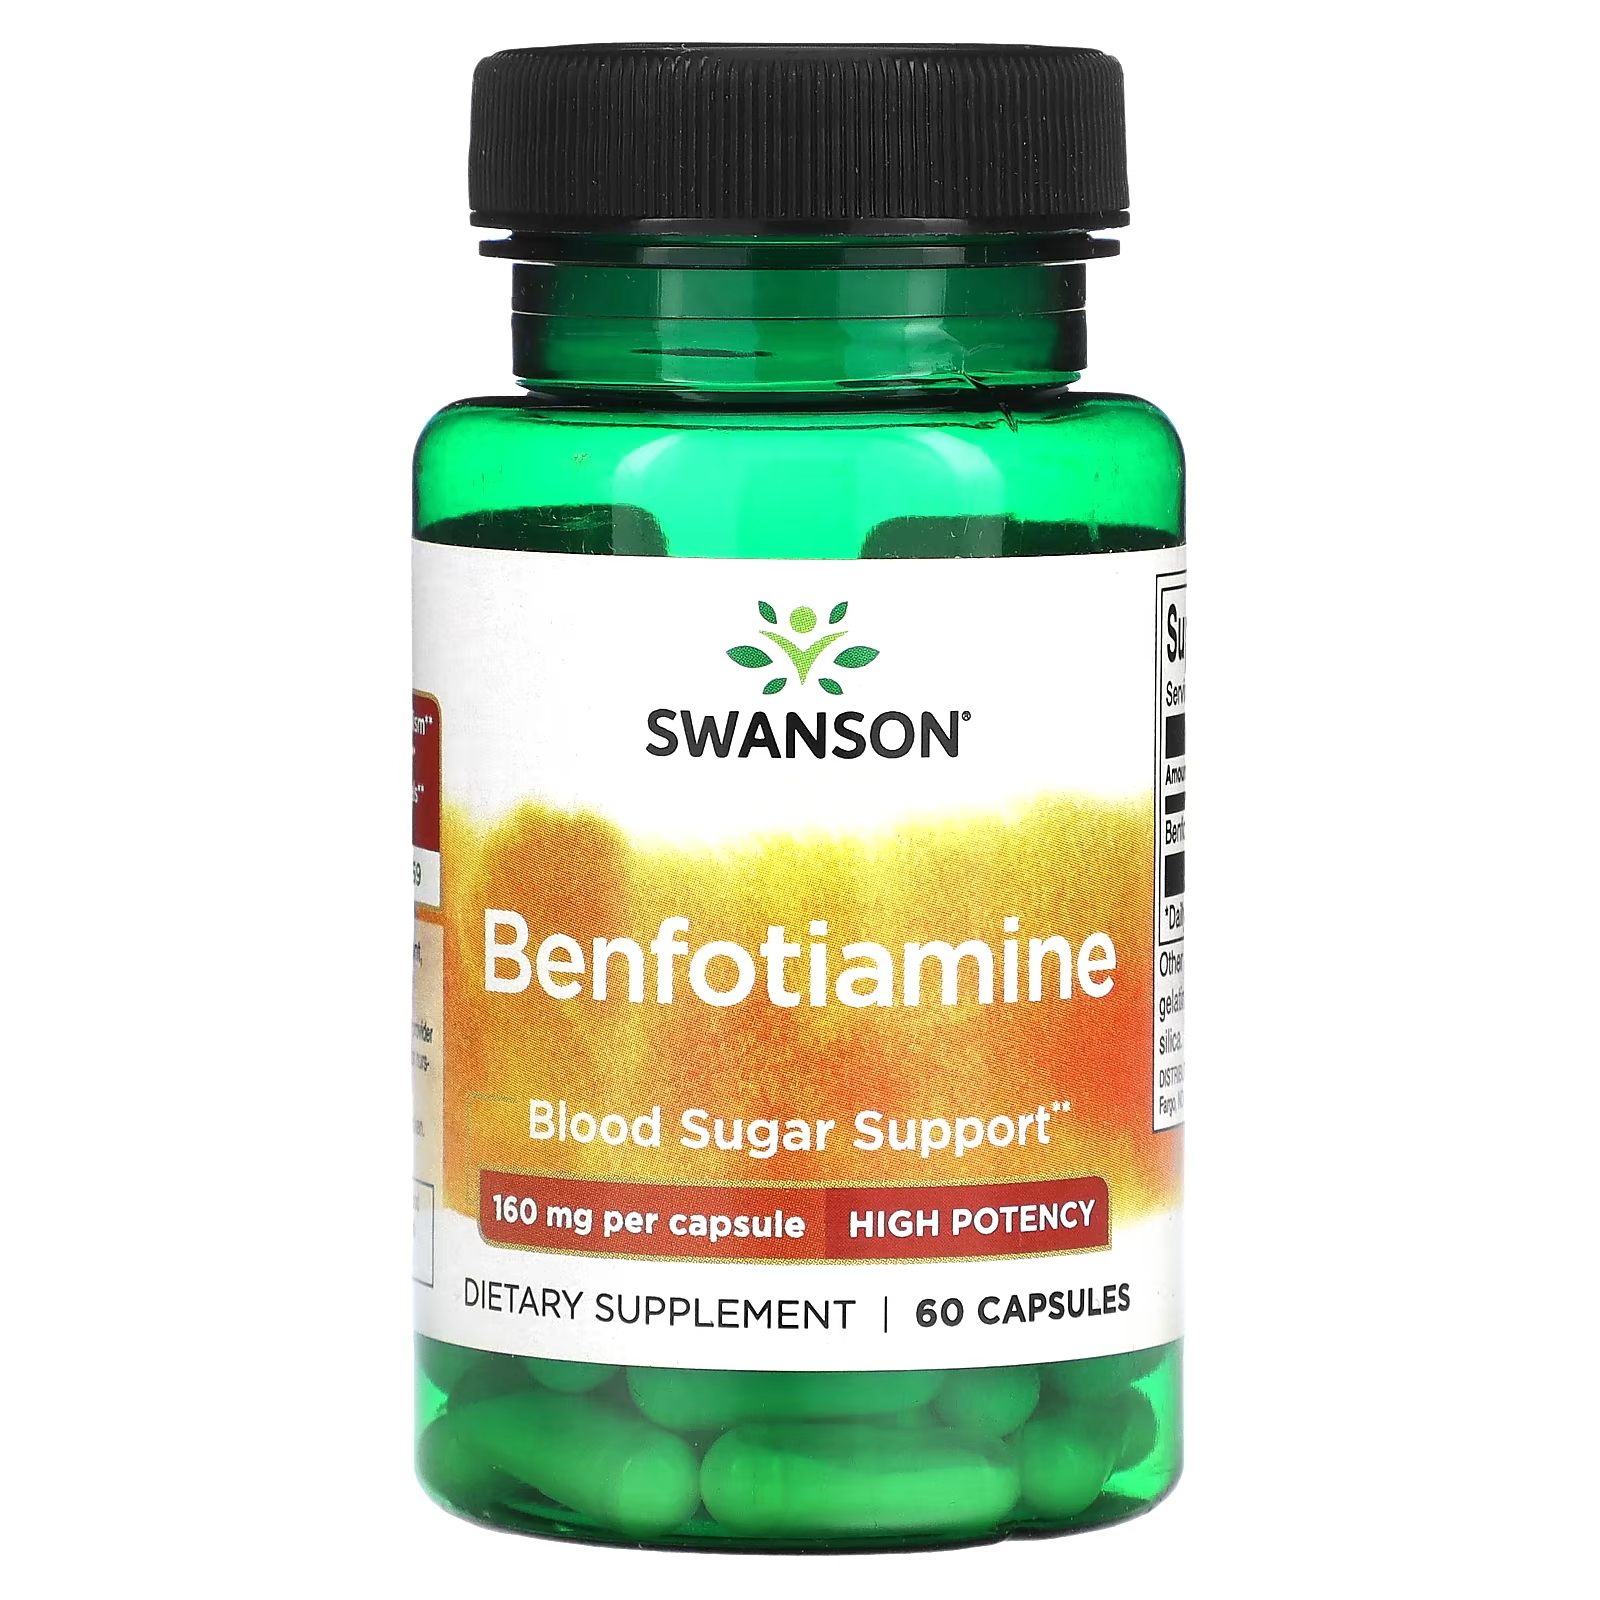 Бенфотиамин высокой эффективности Swanson 160 мг, 60 капсул swanson бенфотиамин 80 мг 120 капсул